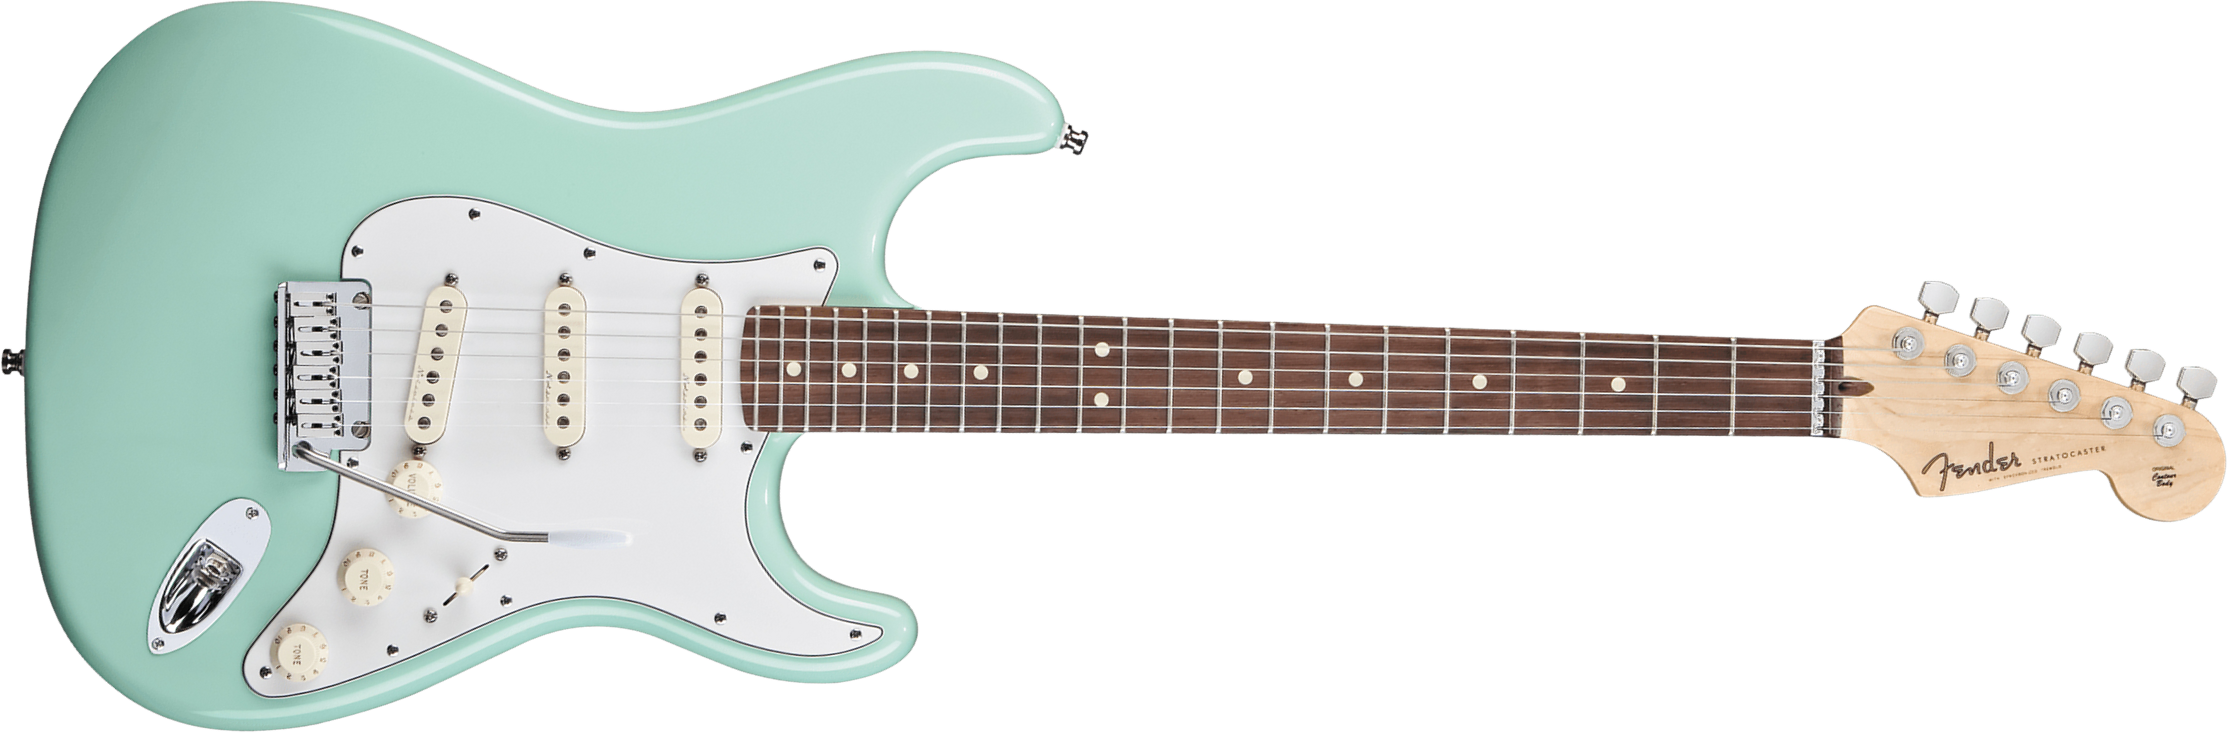 Fender Custom Shop Jeff Beck Strat 3s Trem Rw - Nos Surf Green - E-Gitarre in Str-Form - Main picture